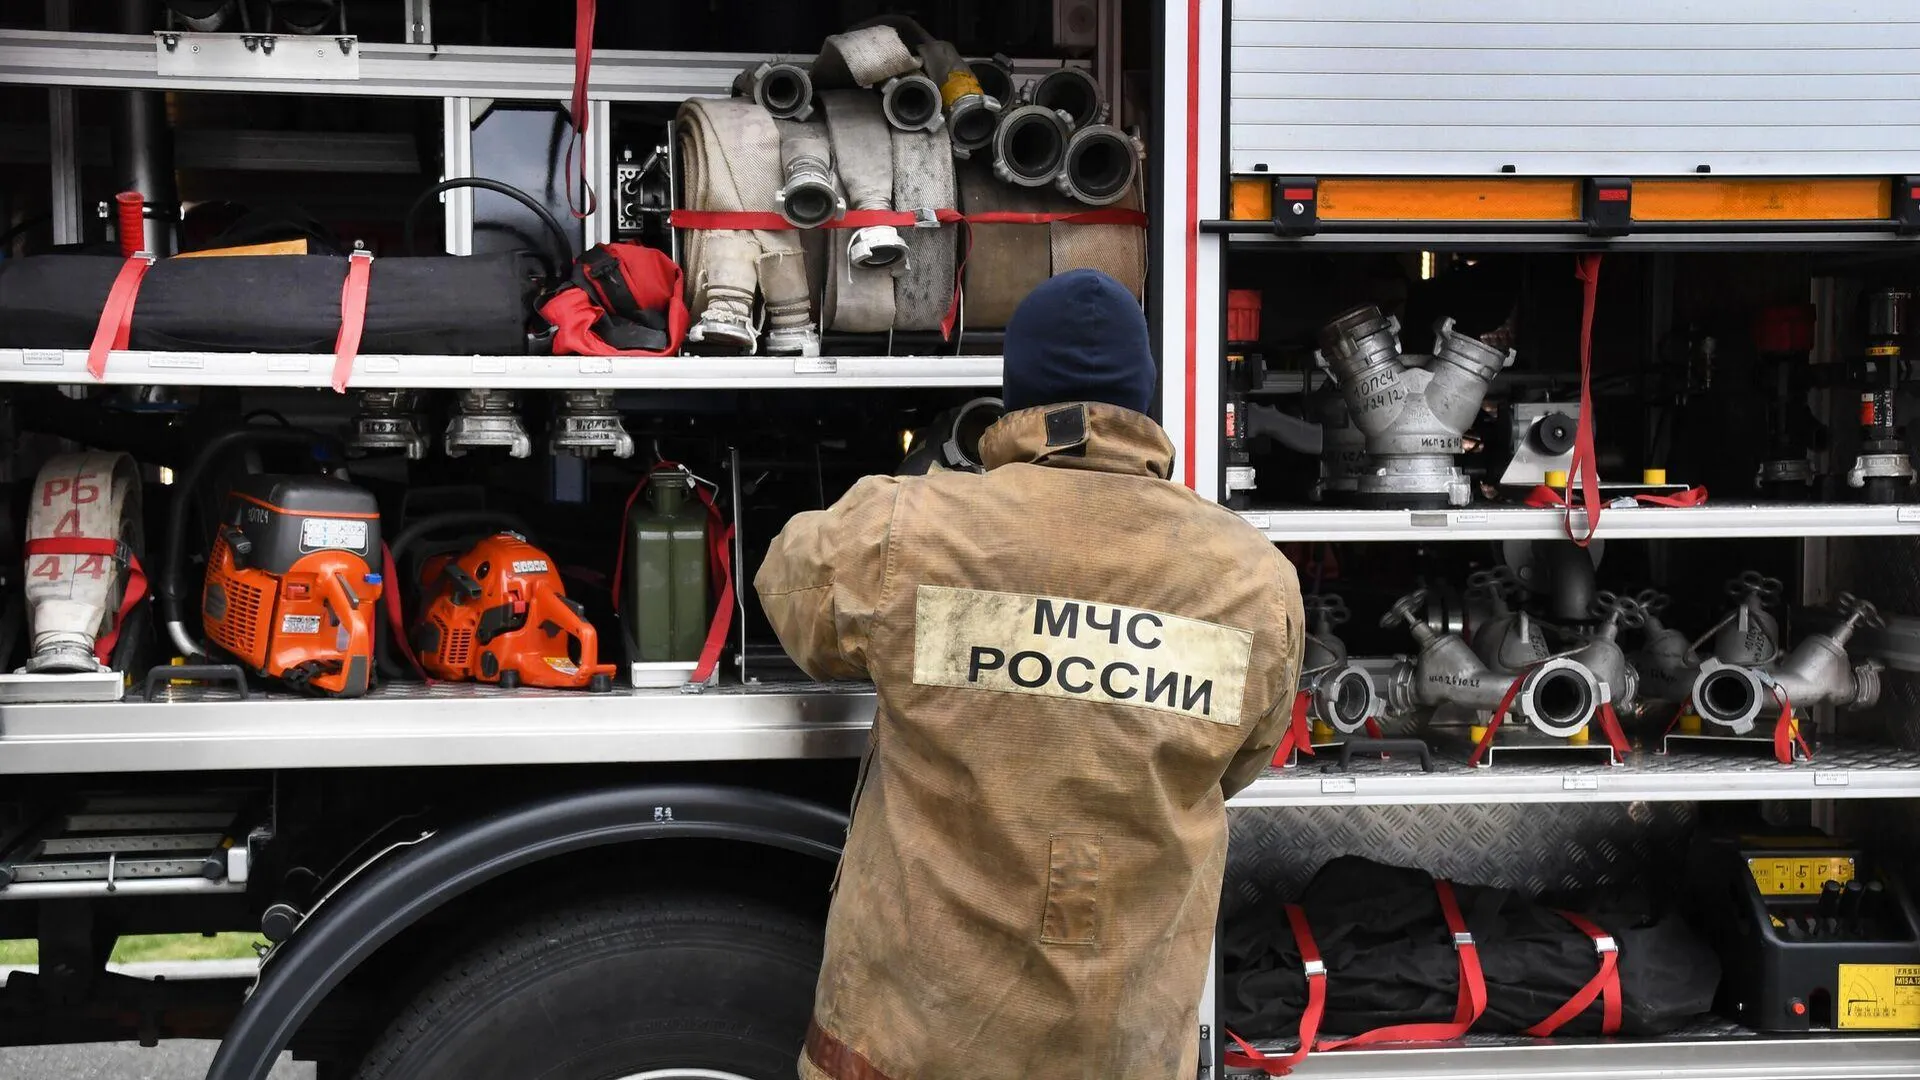 Звуки взрывов прозвучали на территории горящего производственного комплекса в Москве